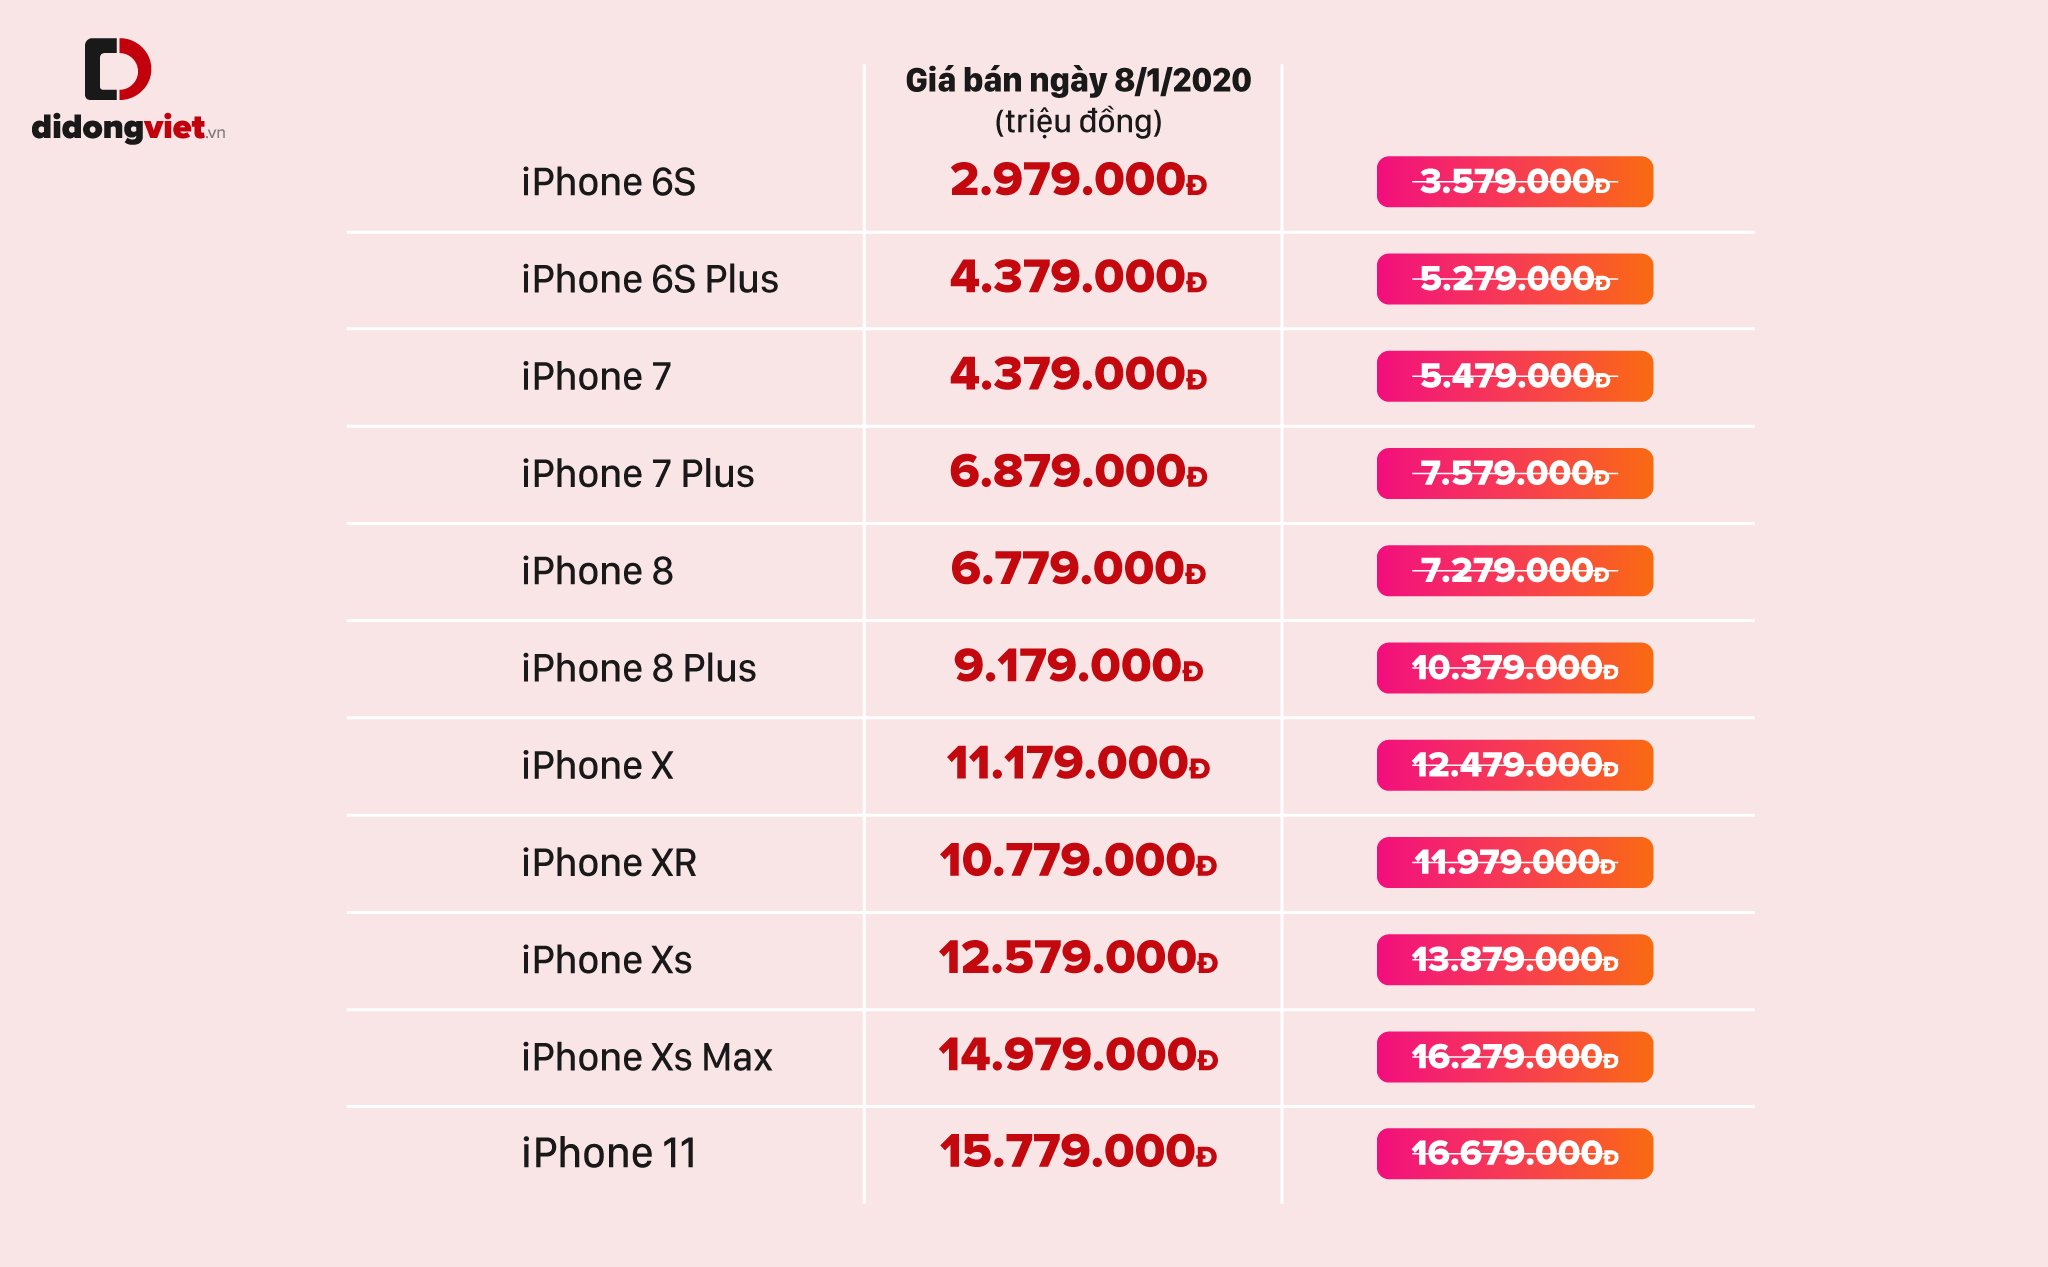 Các dòng iPhone cũ đã giảm giá hay chưa?